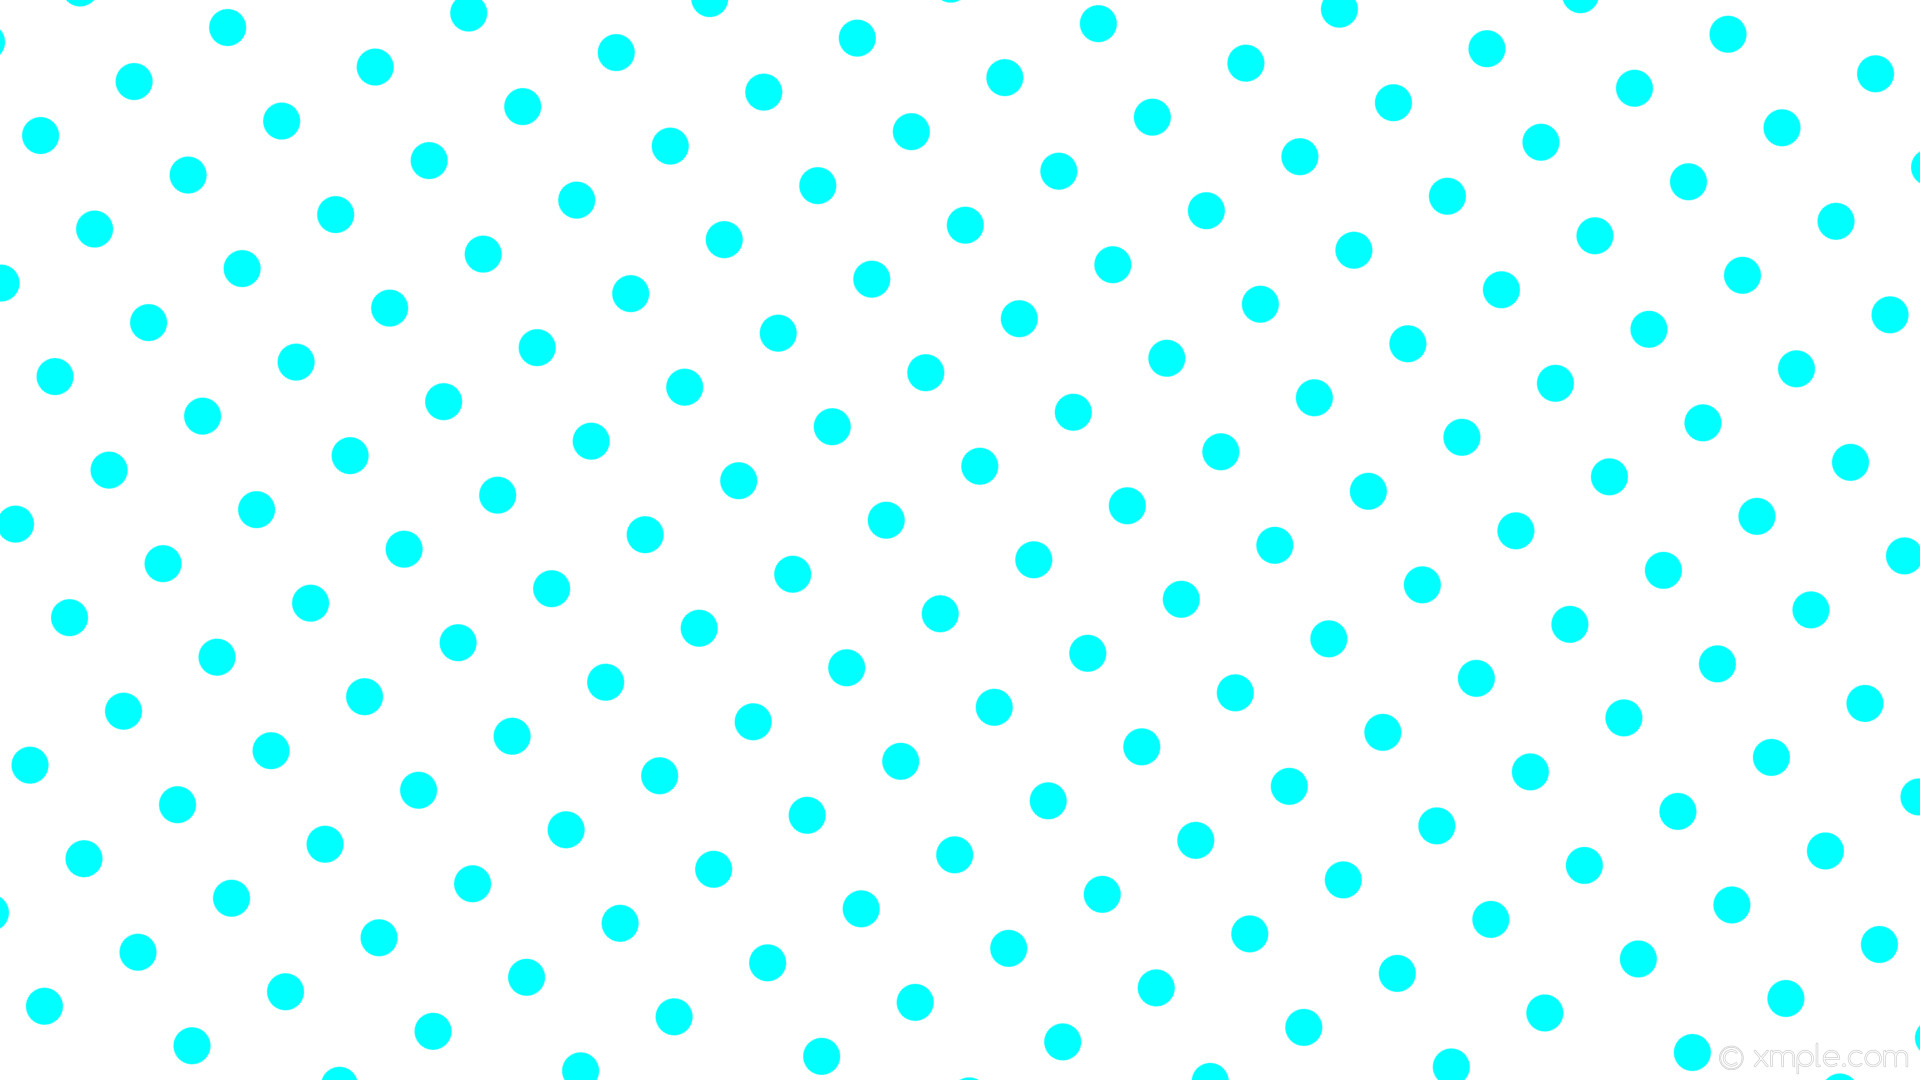 Wallpaper white polka dots blue spots aqua cyan #ffffff ffff 210 37px 108px